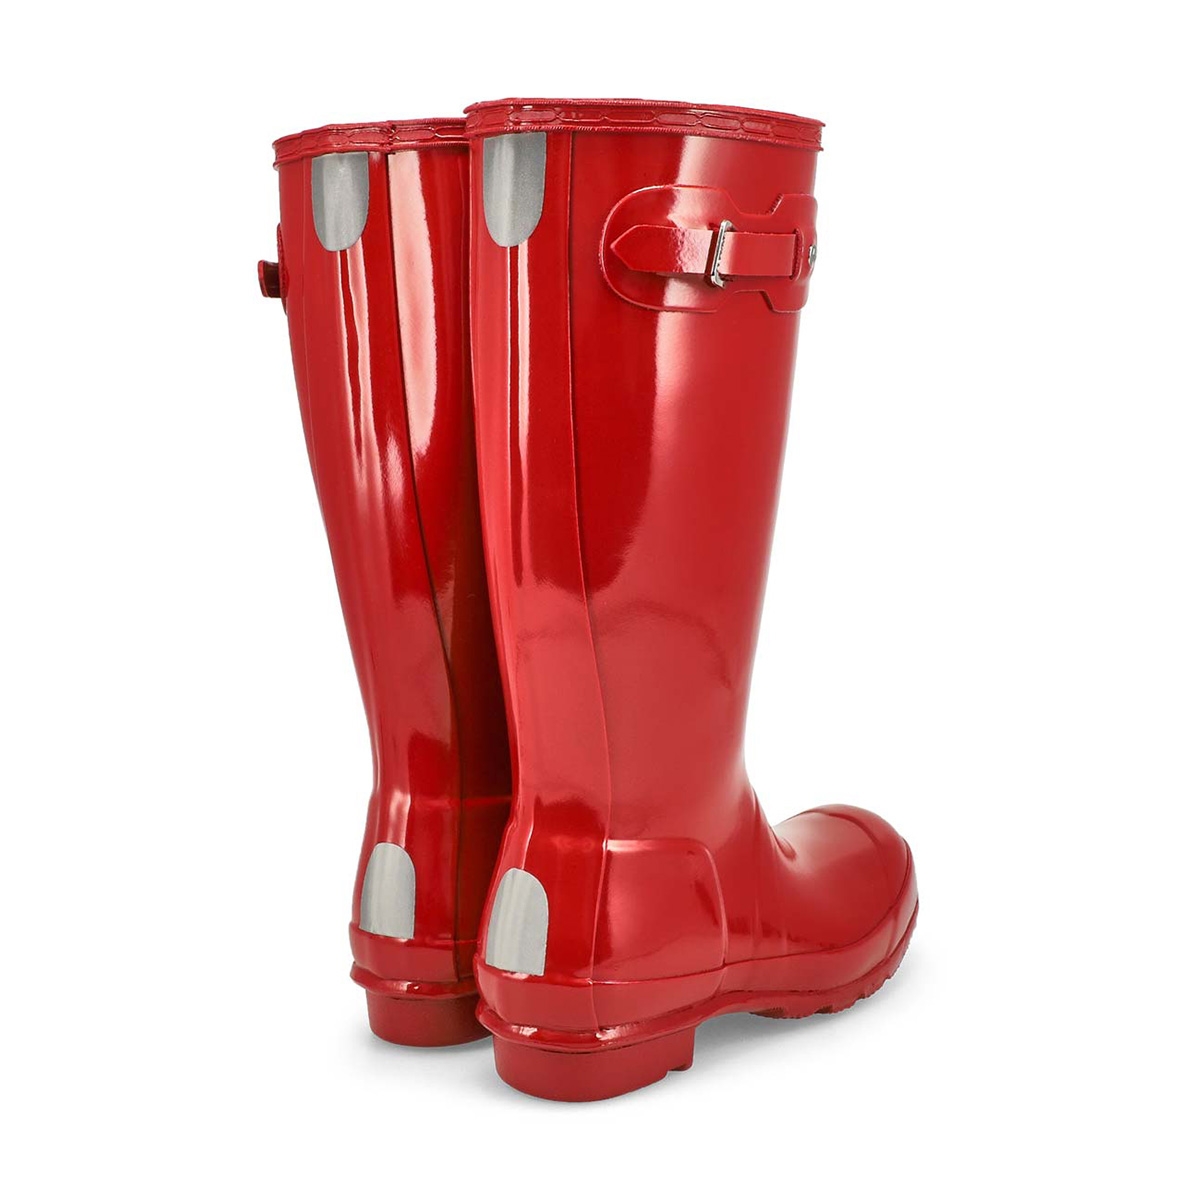 Girls' ORIGINAL GLOSS military red rain boots